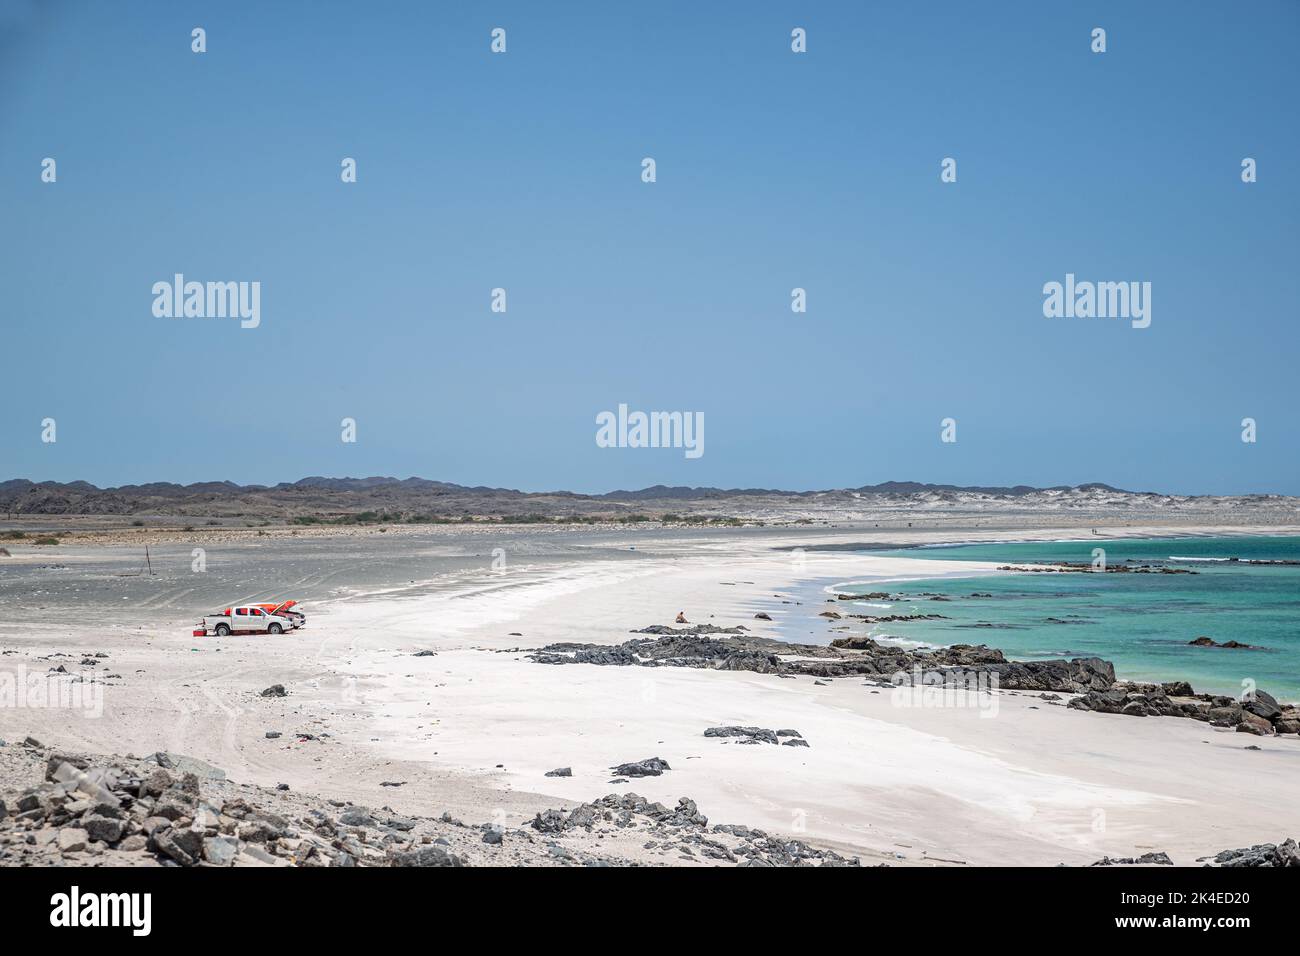 Plage déserte avec sable blanc et eau turquoise, île de Masirah, Oman Banque D'Images